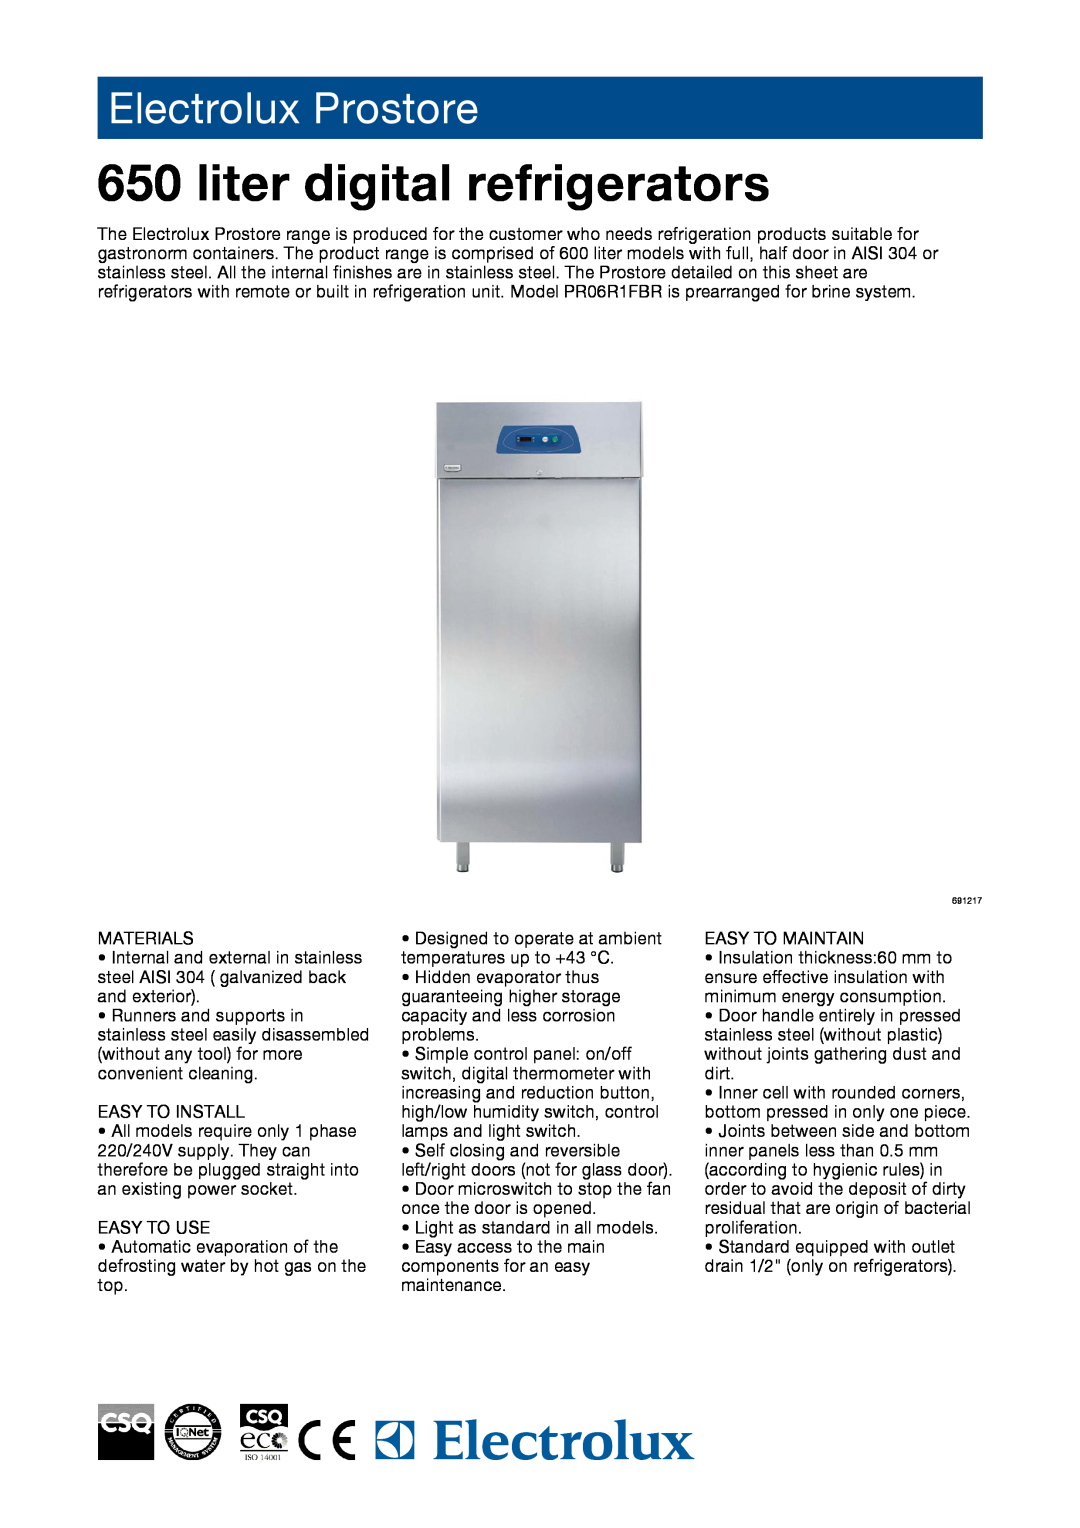 Electrolux 691220, 691153, 691217, 691219, 691218, PR06R1FR, PR06R1FBR manual liter digital refrigerators, Electrolux Prostore 